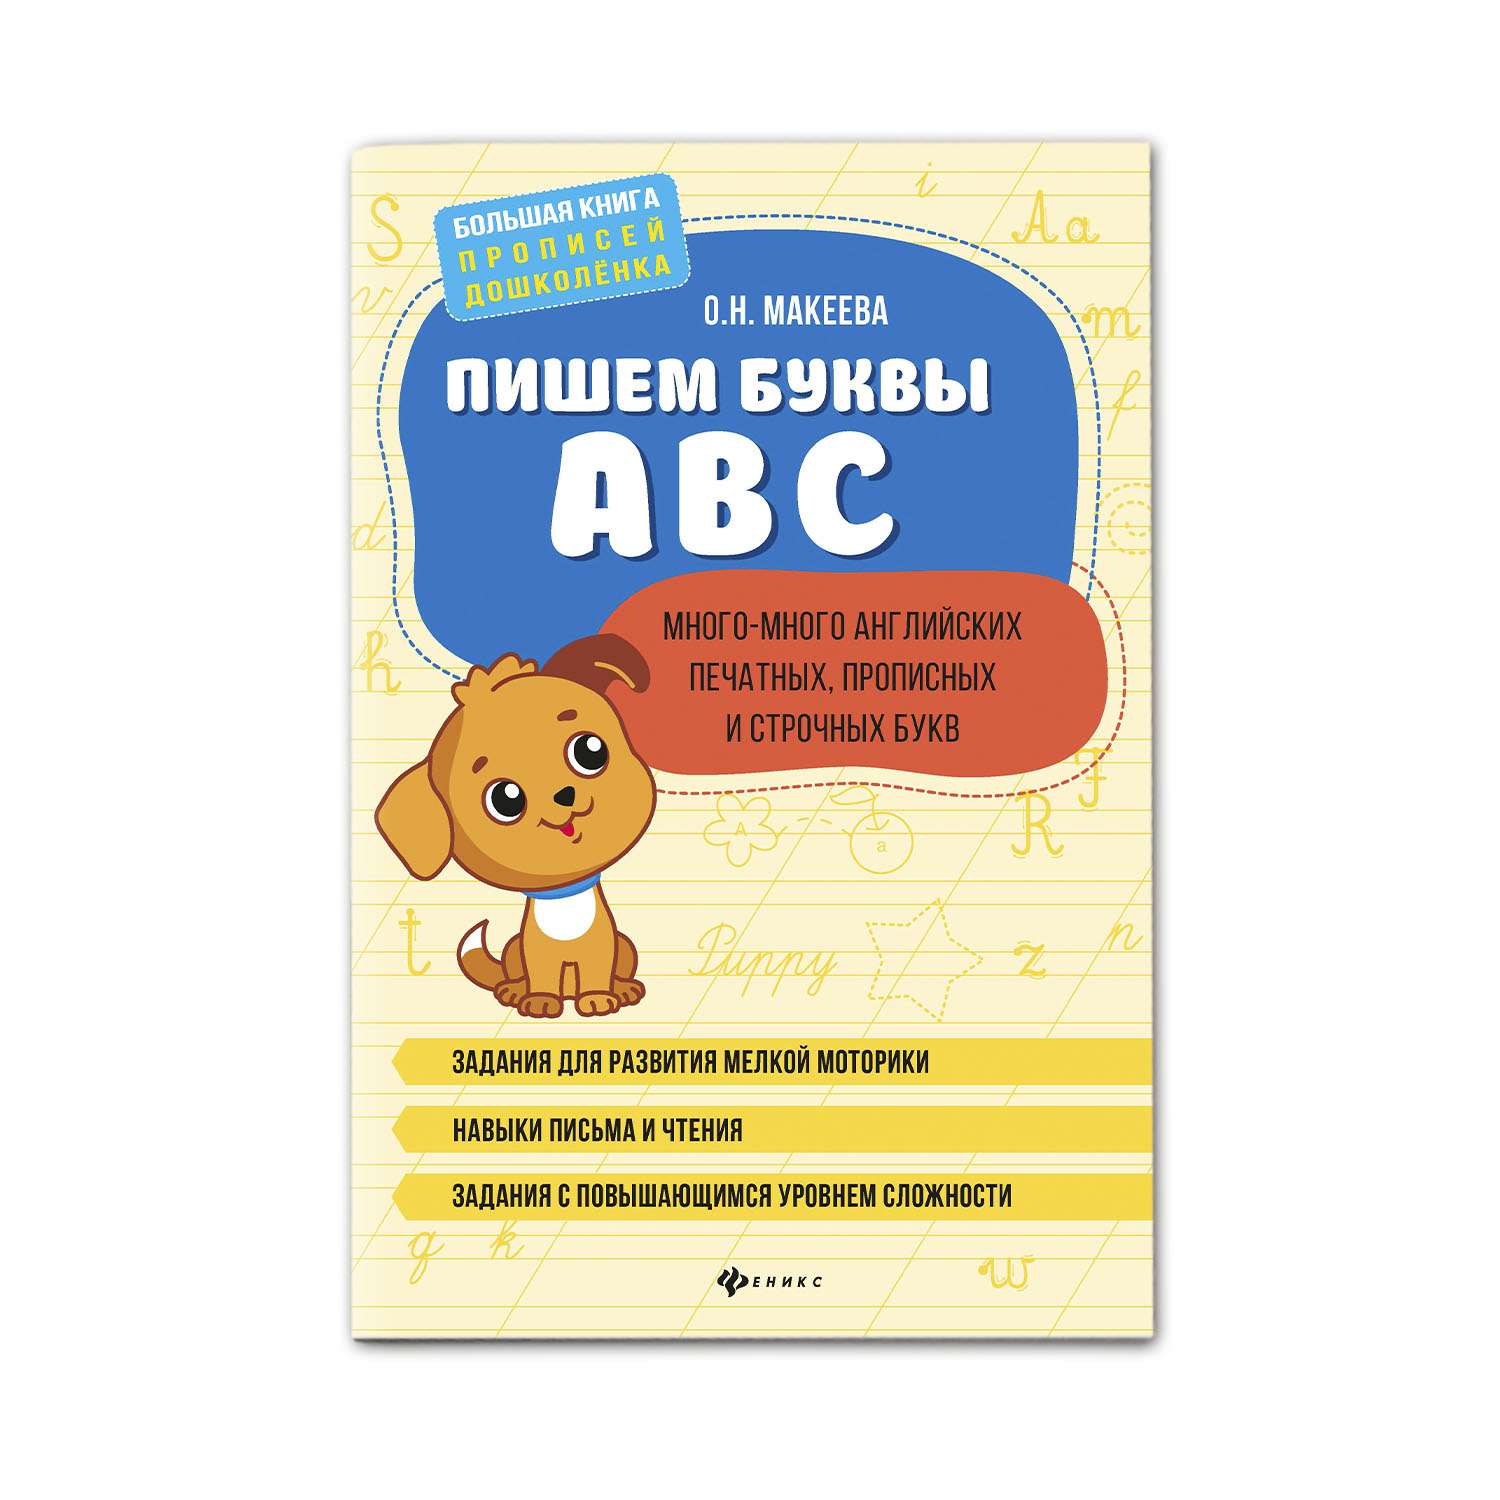 Книга Феникс Пишем буквы ABC: много-много английских печатных прописных и строчных букв - фото 1